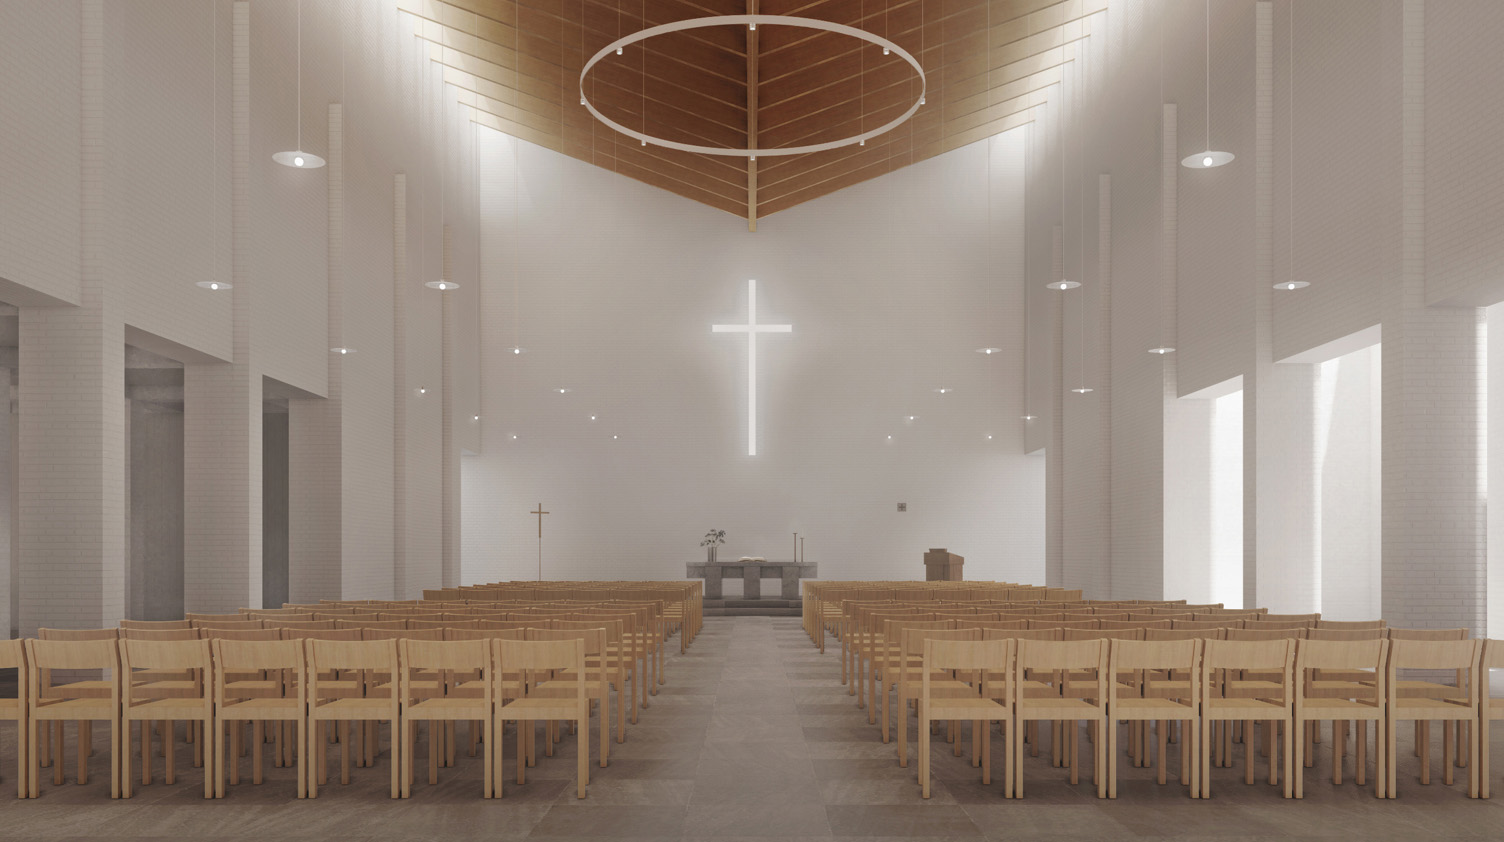 Slik blir kirkerommet i Charlottenlund nye kirke. (Illustrasjon Atelje Ö)